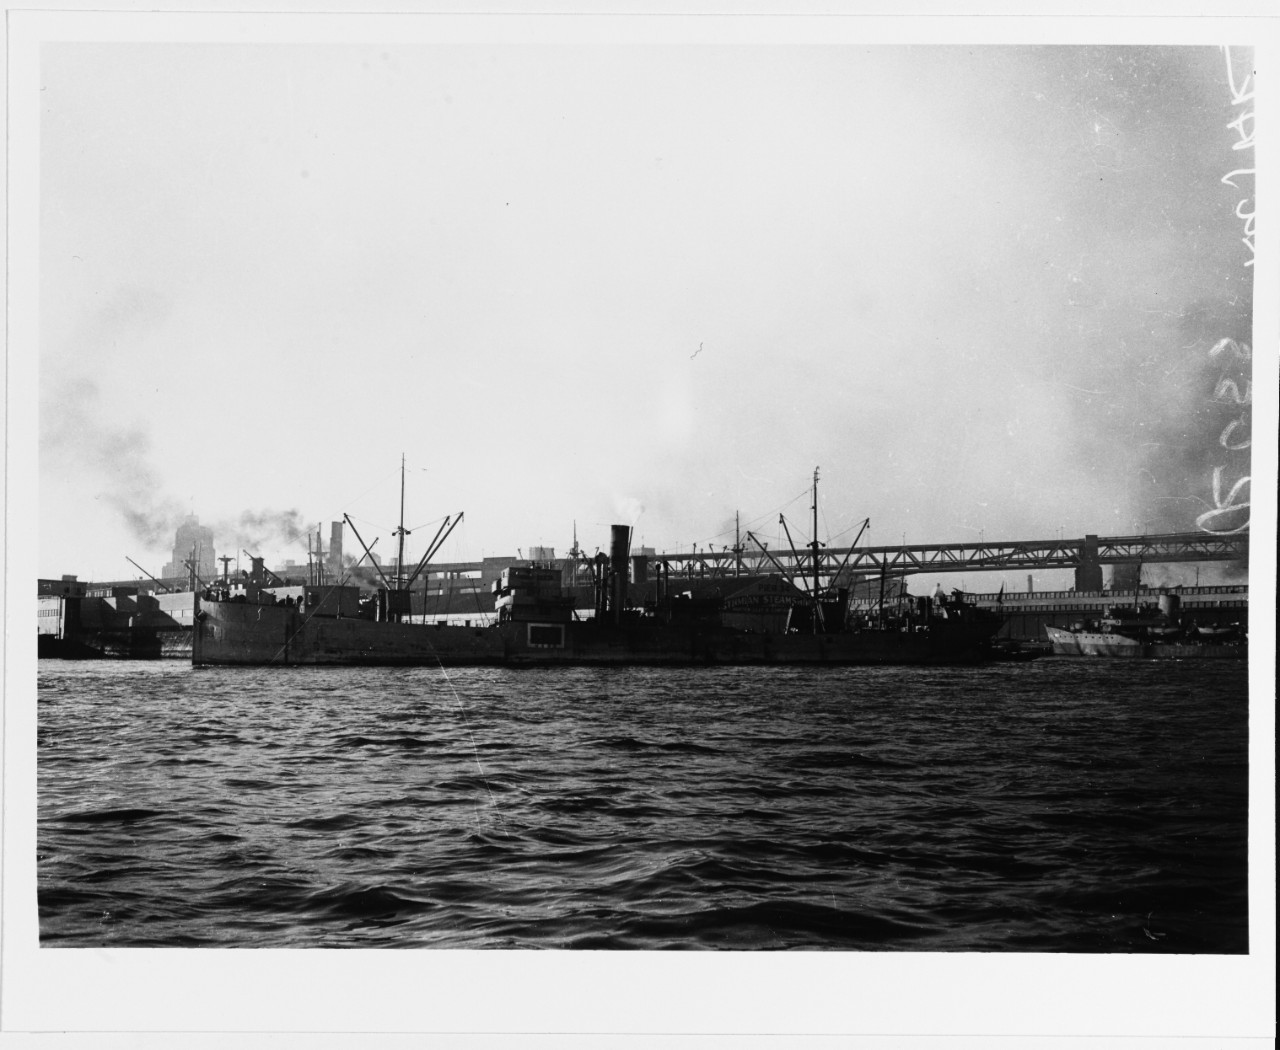 S.S. KAJAK (U.S.S.R. Merchant Cargo Ship, 1905-1950?)